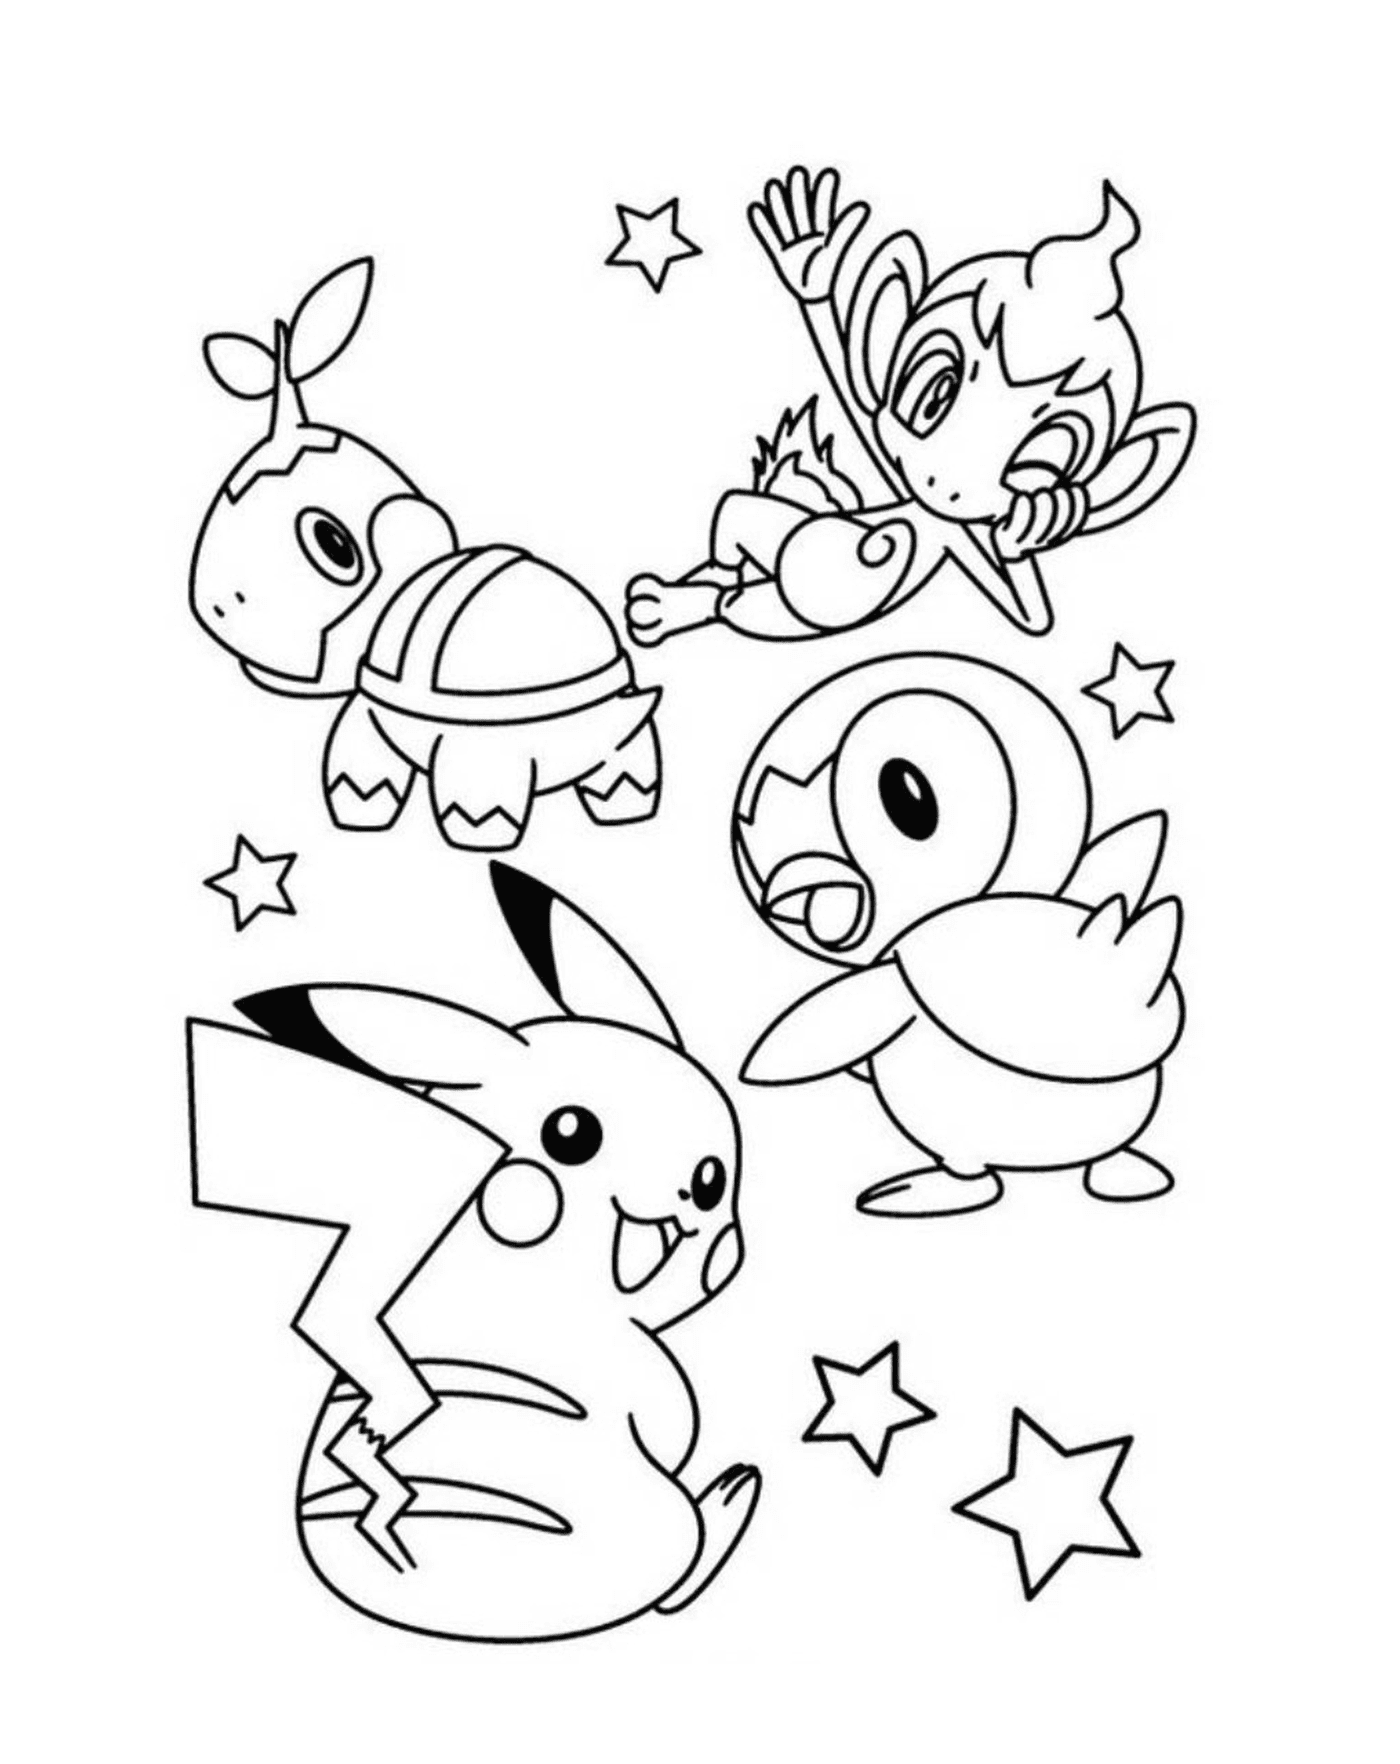  Un gruppo di Pokémon per i bambini 